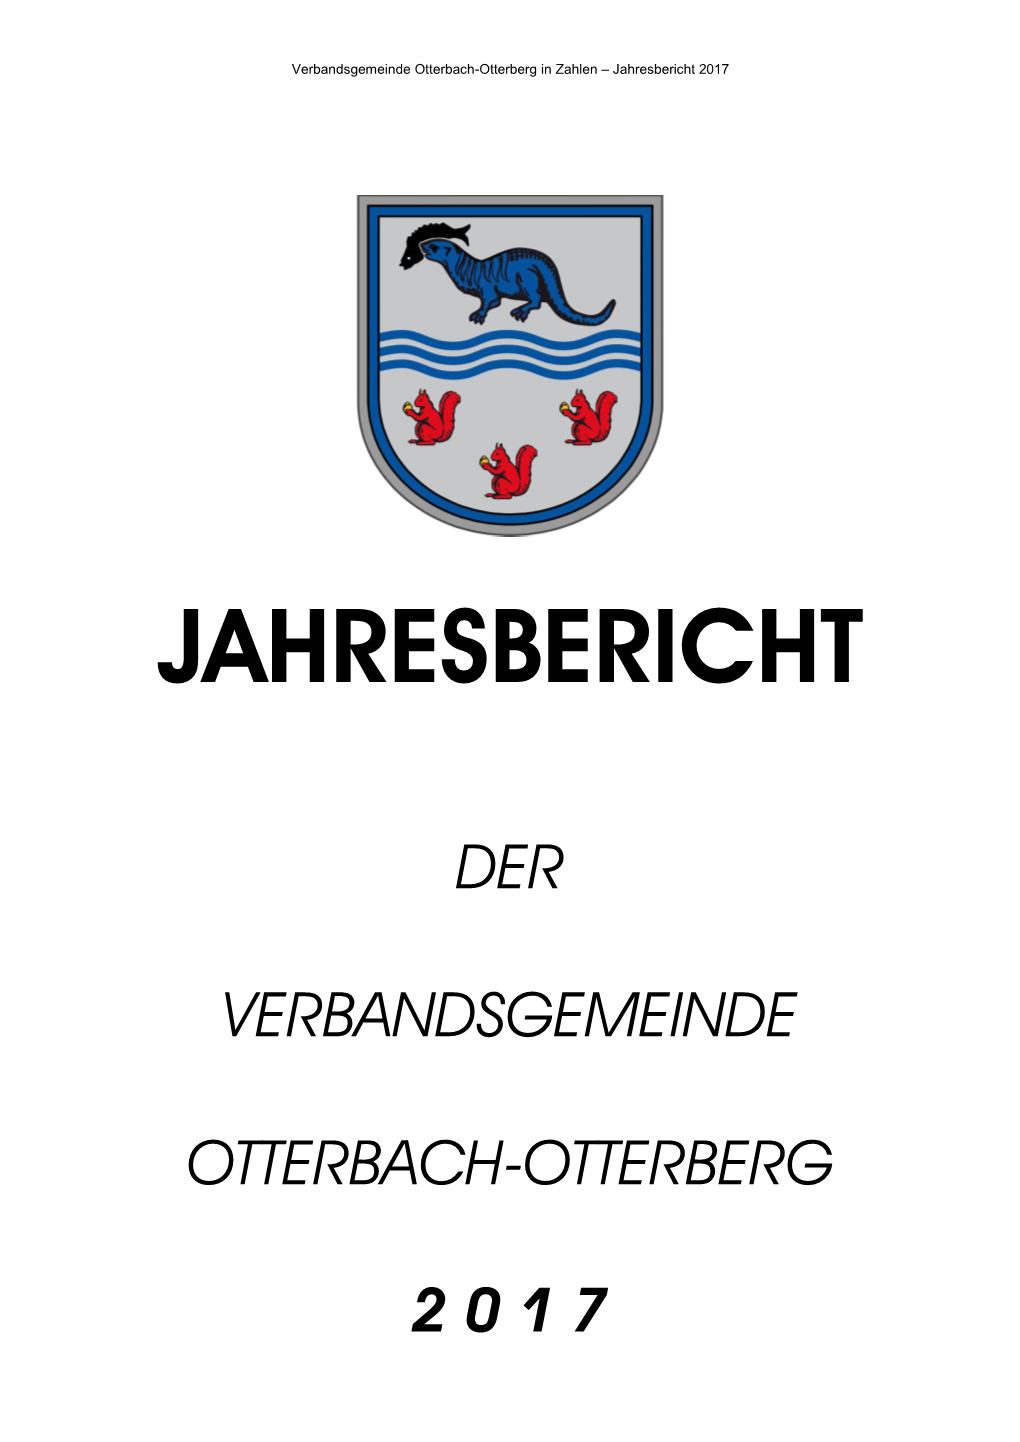 Der Verbandsgemeinde Otterbach-Otterberg 2 0